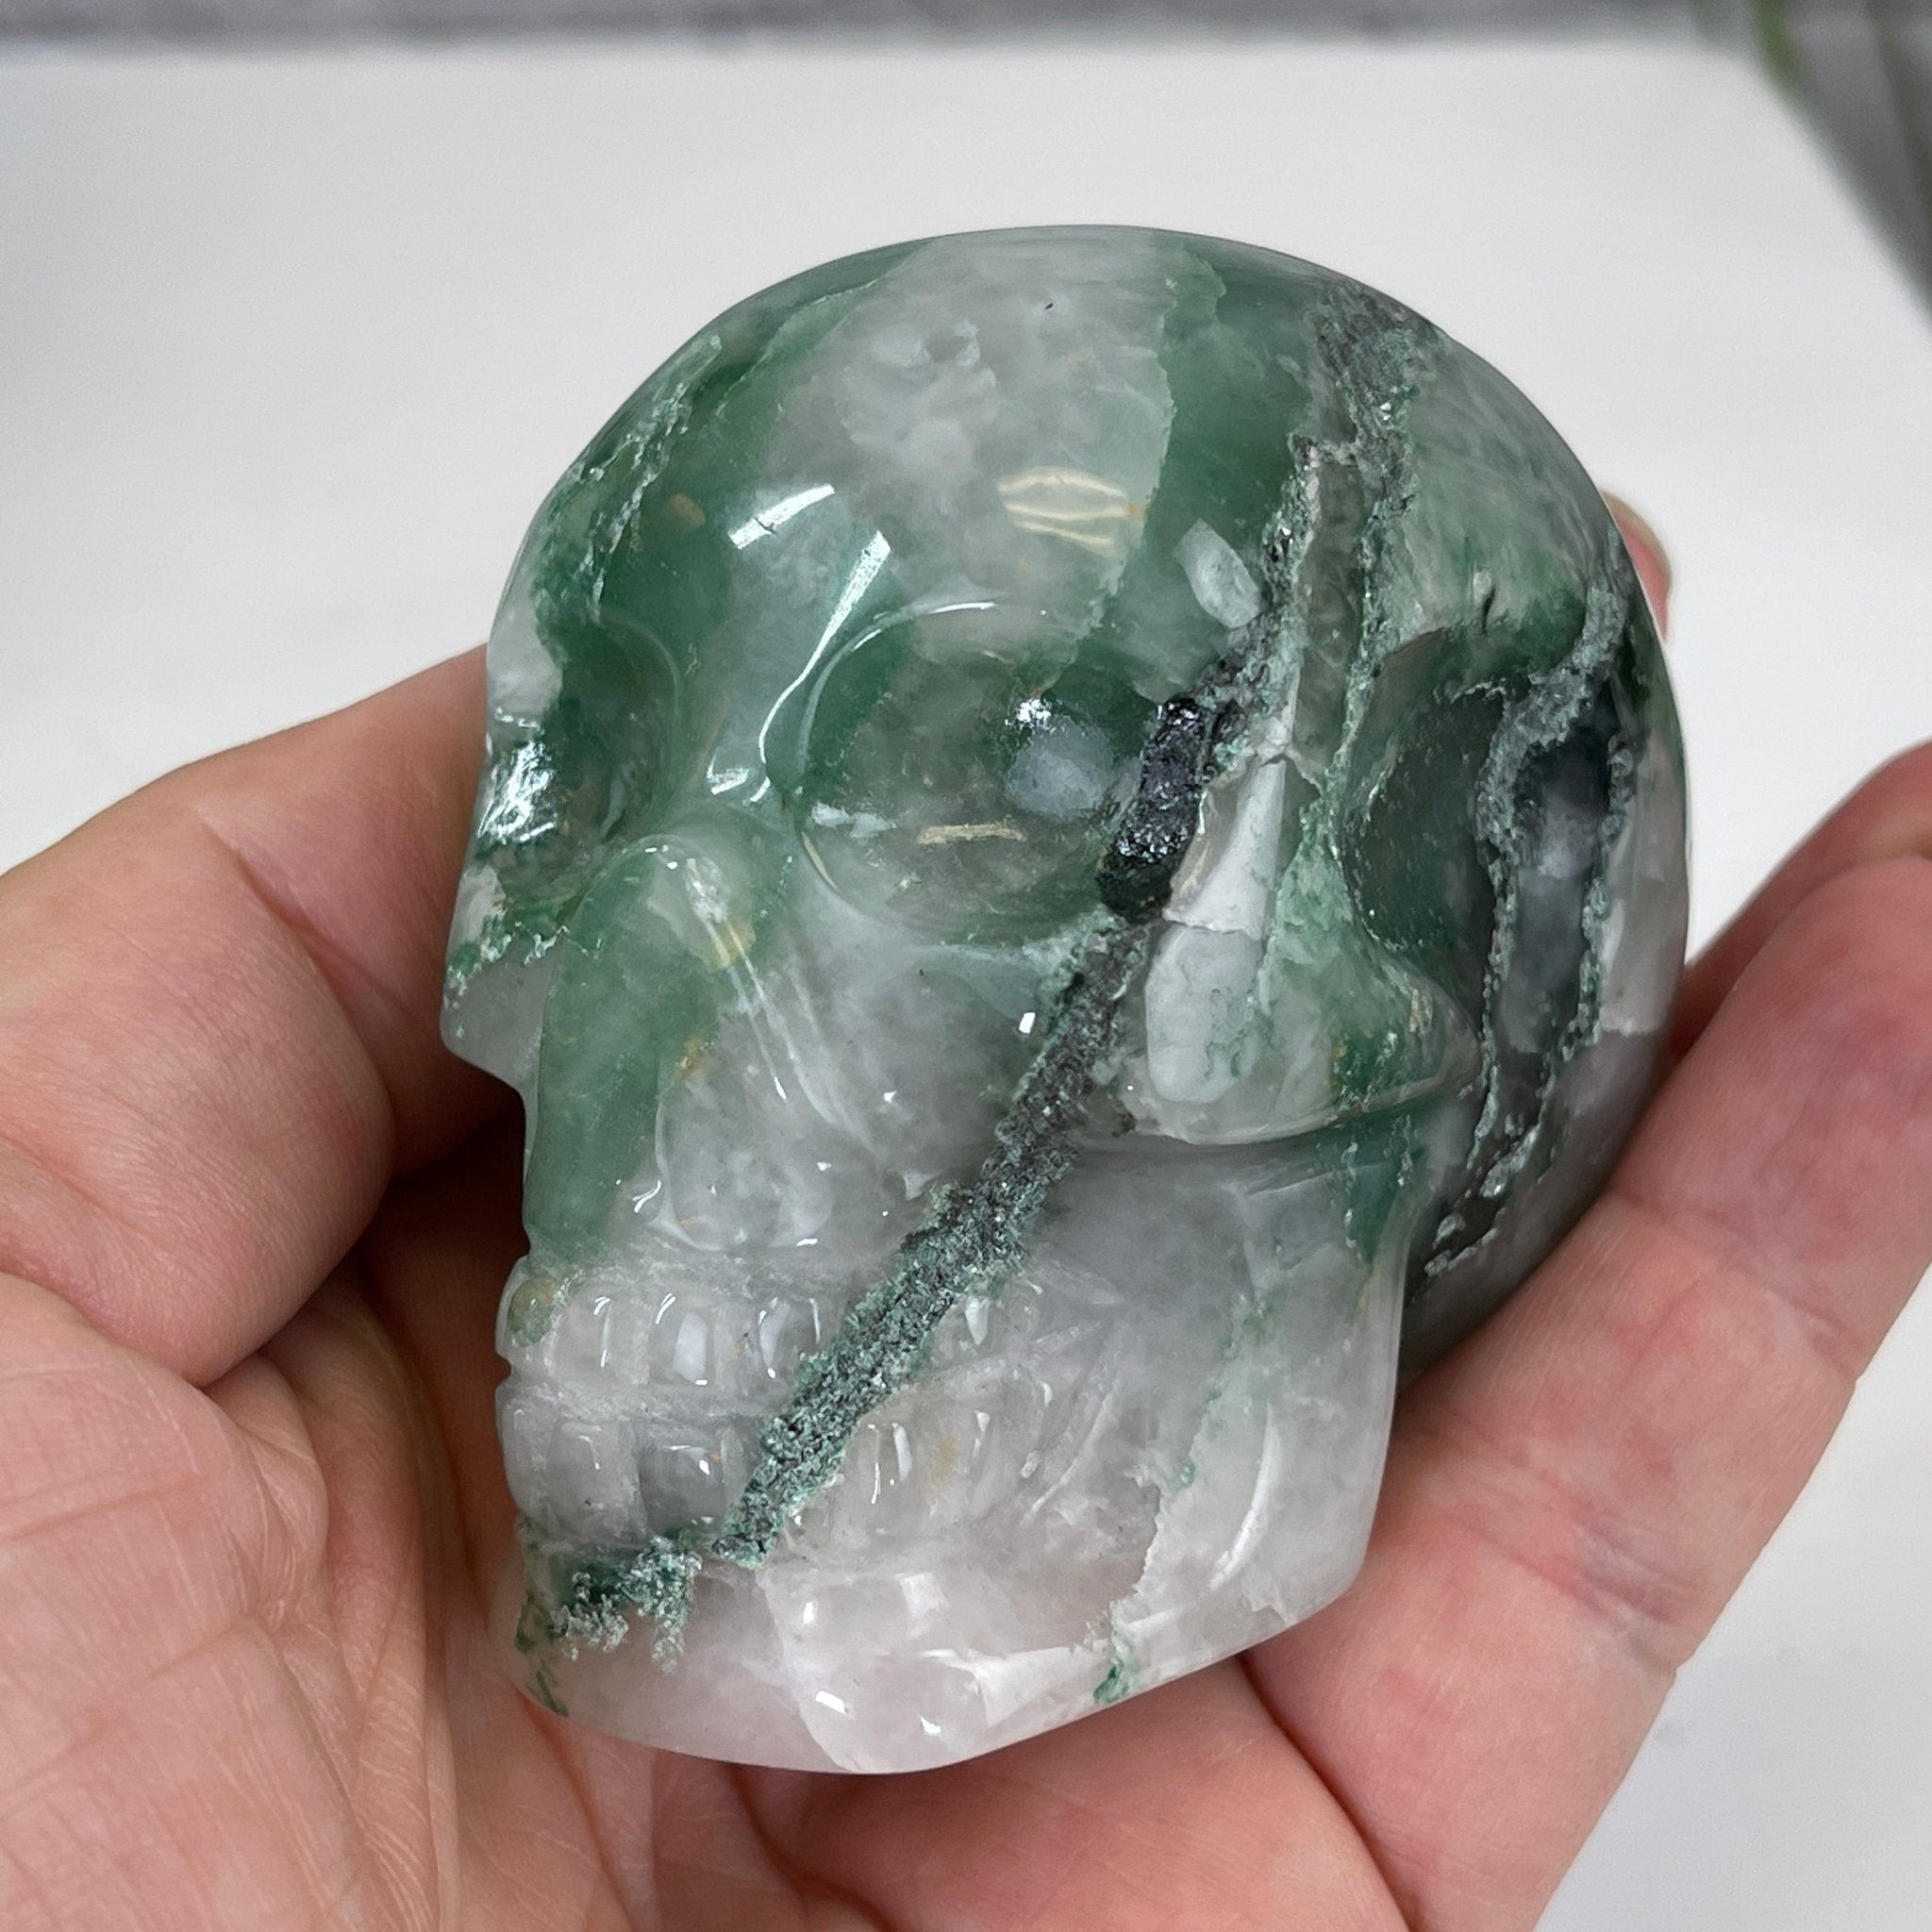 Handmade Green Quartz Crystal Skull 2.5" tall Model #3477-0001 by Brazil Gems - Brazil GemsBrazil GemsHandmade Green Quartz Crystal Skull 2.5" tall Model #3477-0001 by Brazil GemsSkulls3477-0001